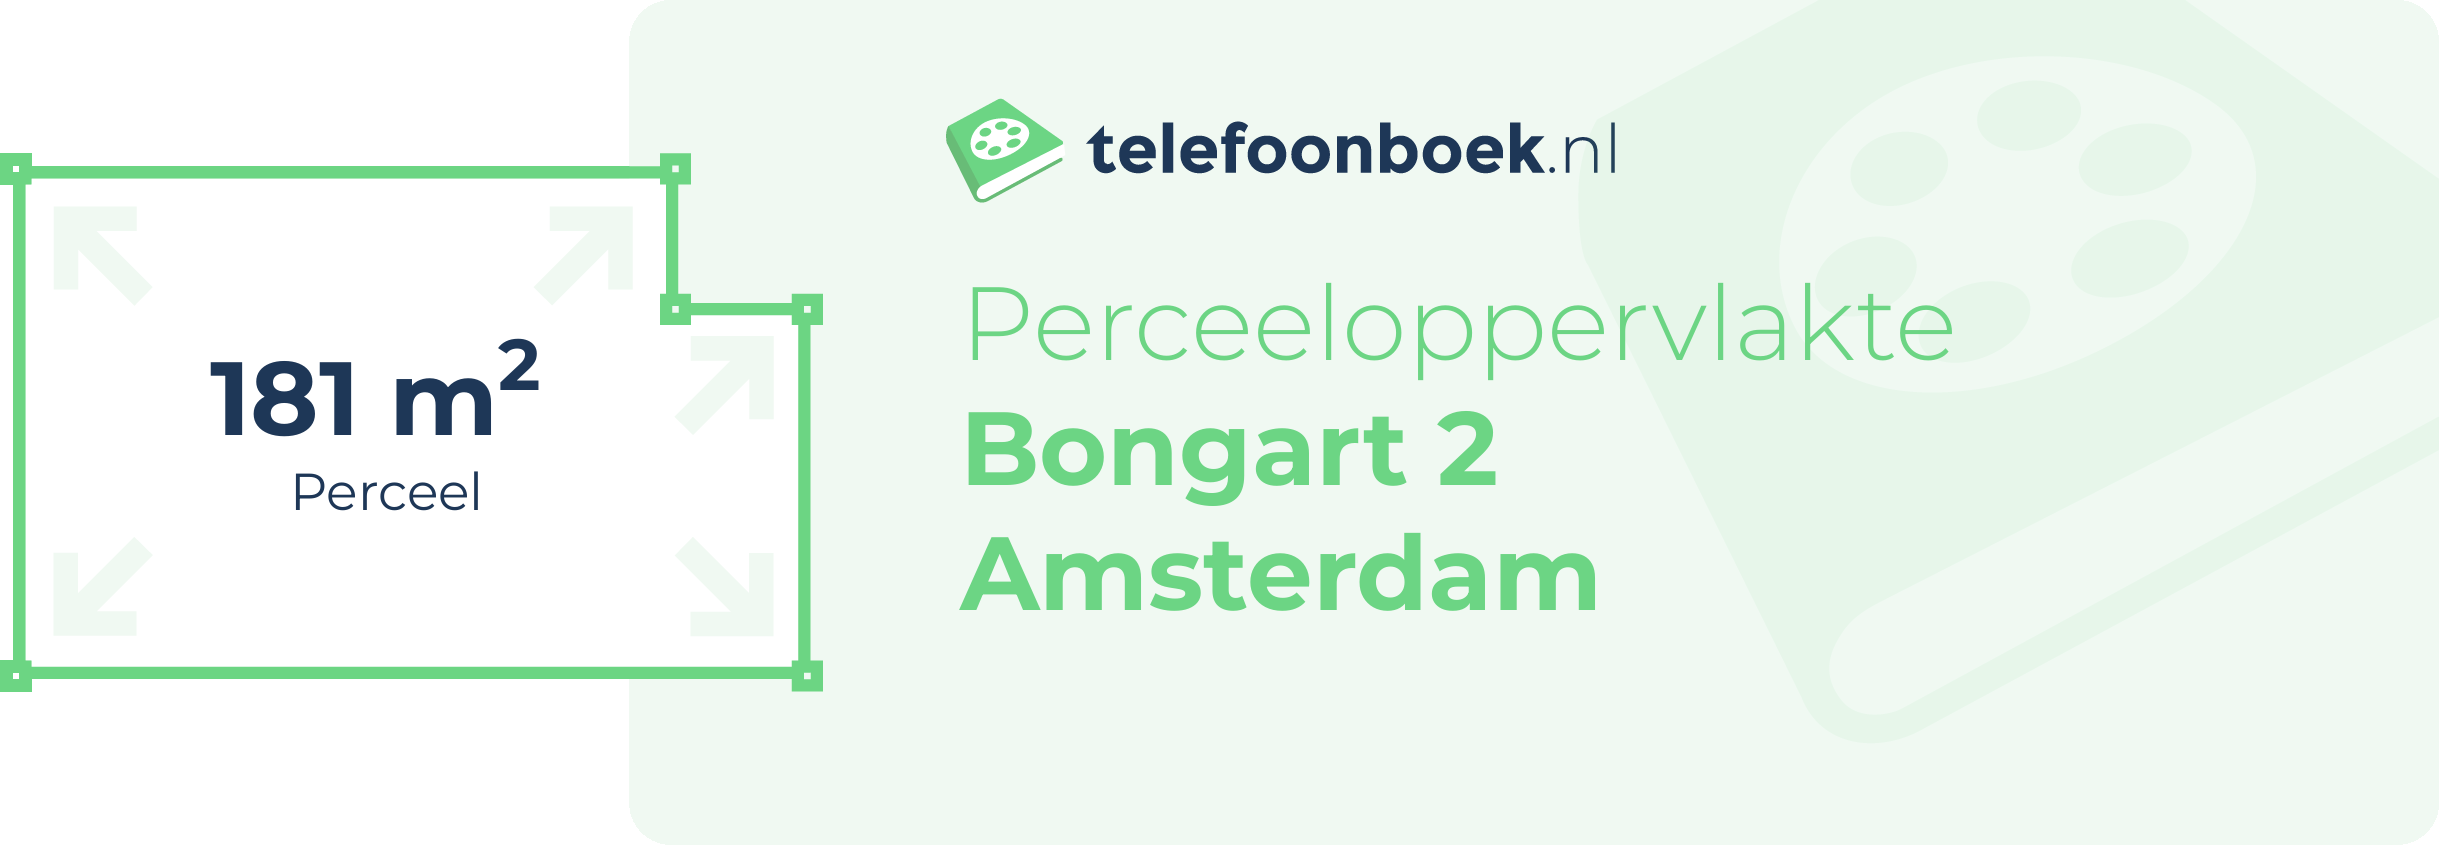 Perceeloppervlakte Bongart 2 Amsterdam